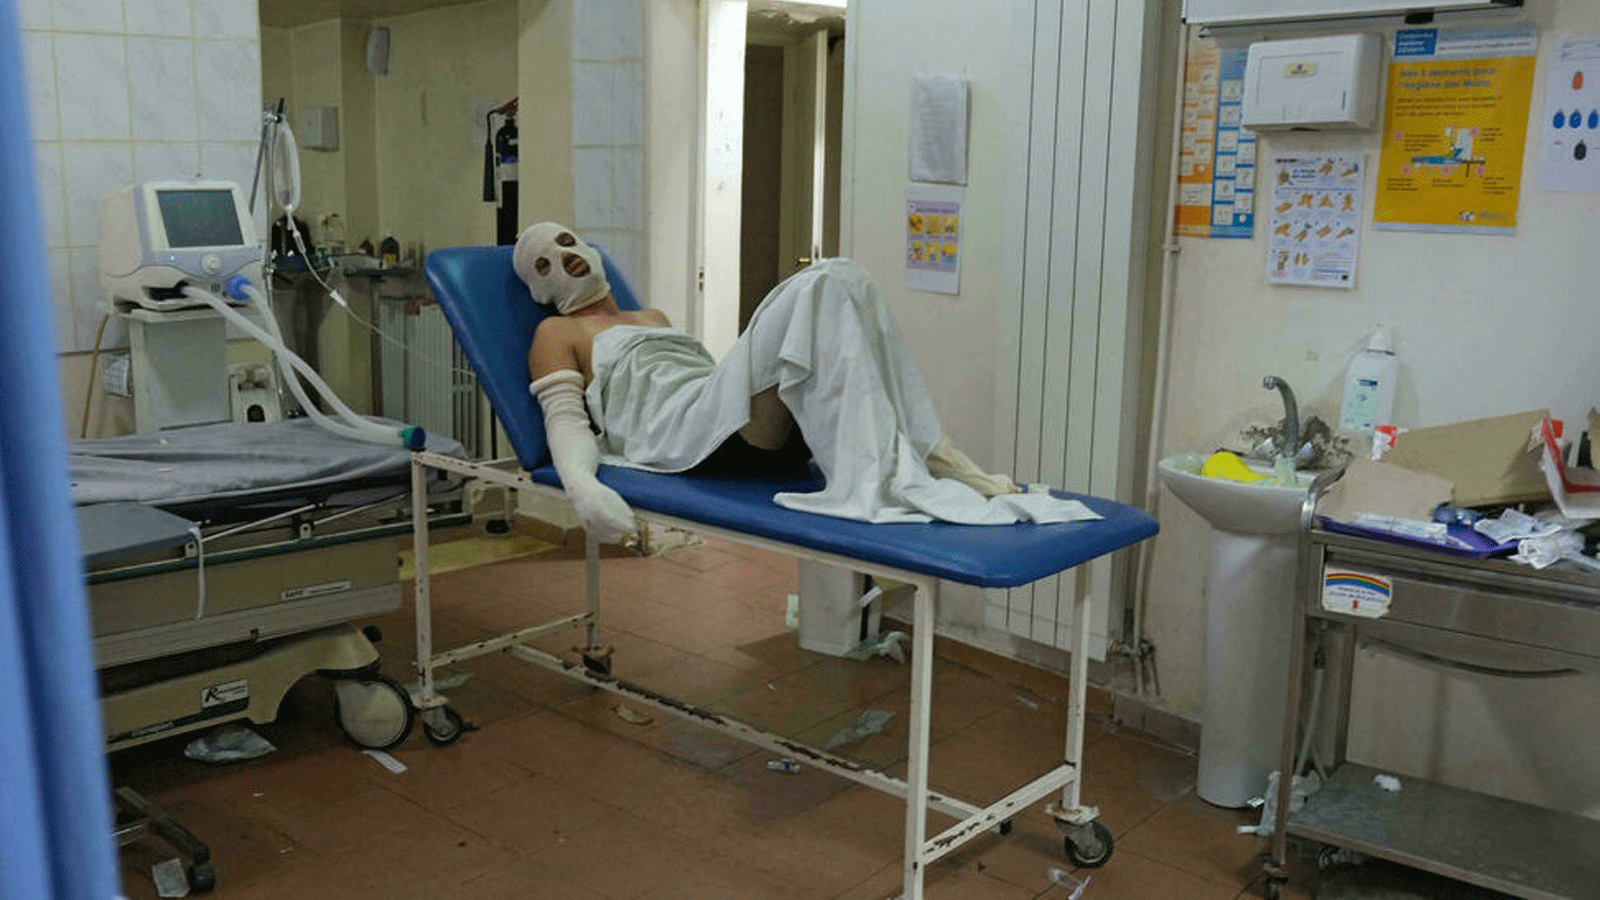 رجلٌ مغطى بشاش معقم لعلاج حروق أصيب بها في انفجار خزان وقود في منطقة عكار شمال لبنان/ مستشفى السلام في مدينة طرابلس. بتاريخ 15 آب/أغسطس 2021